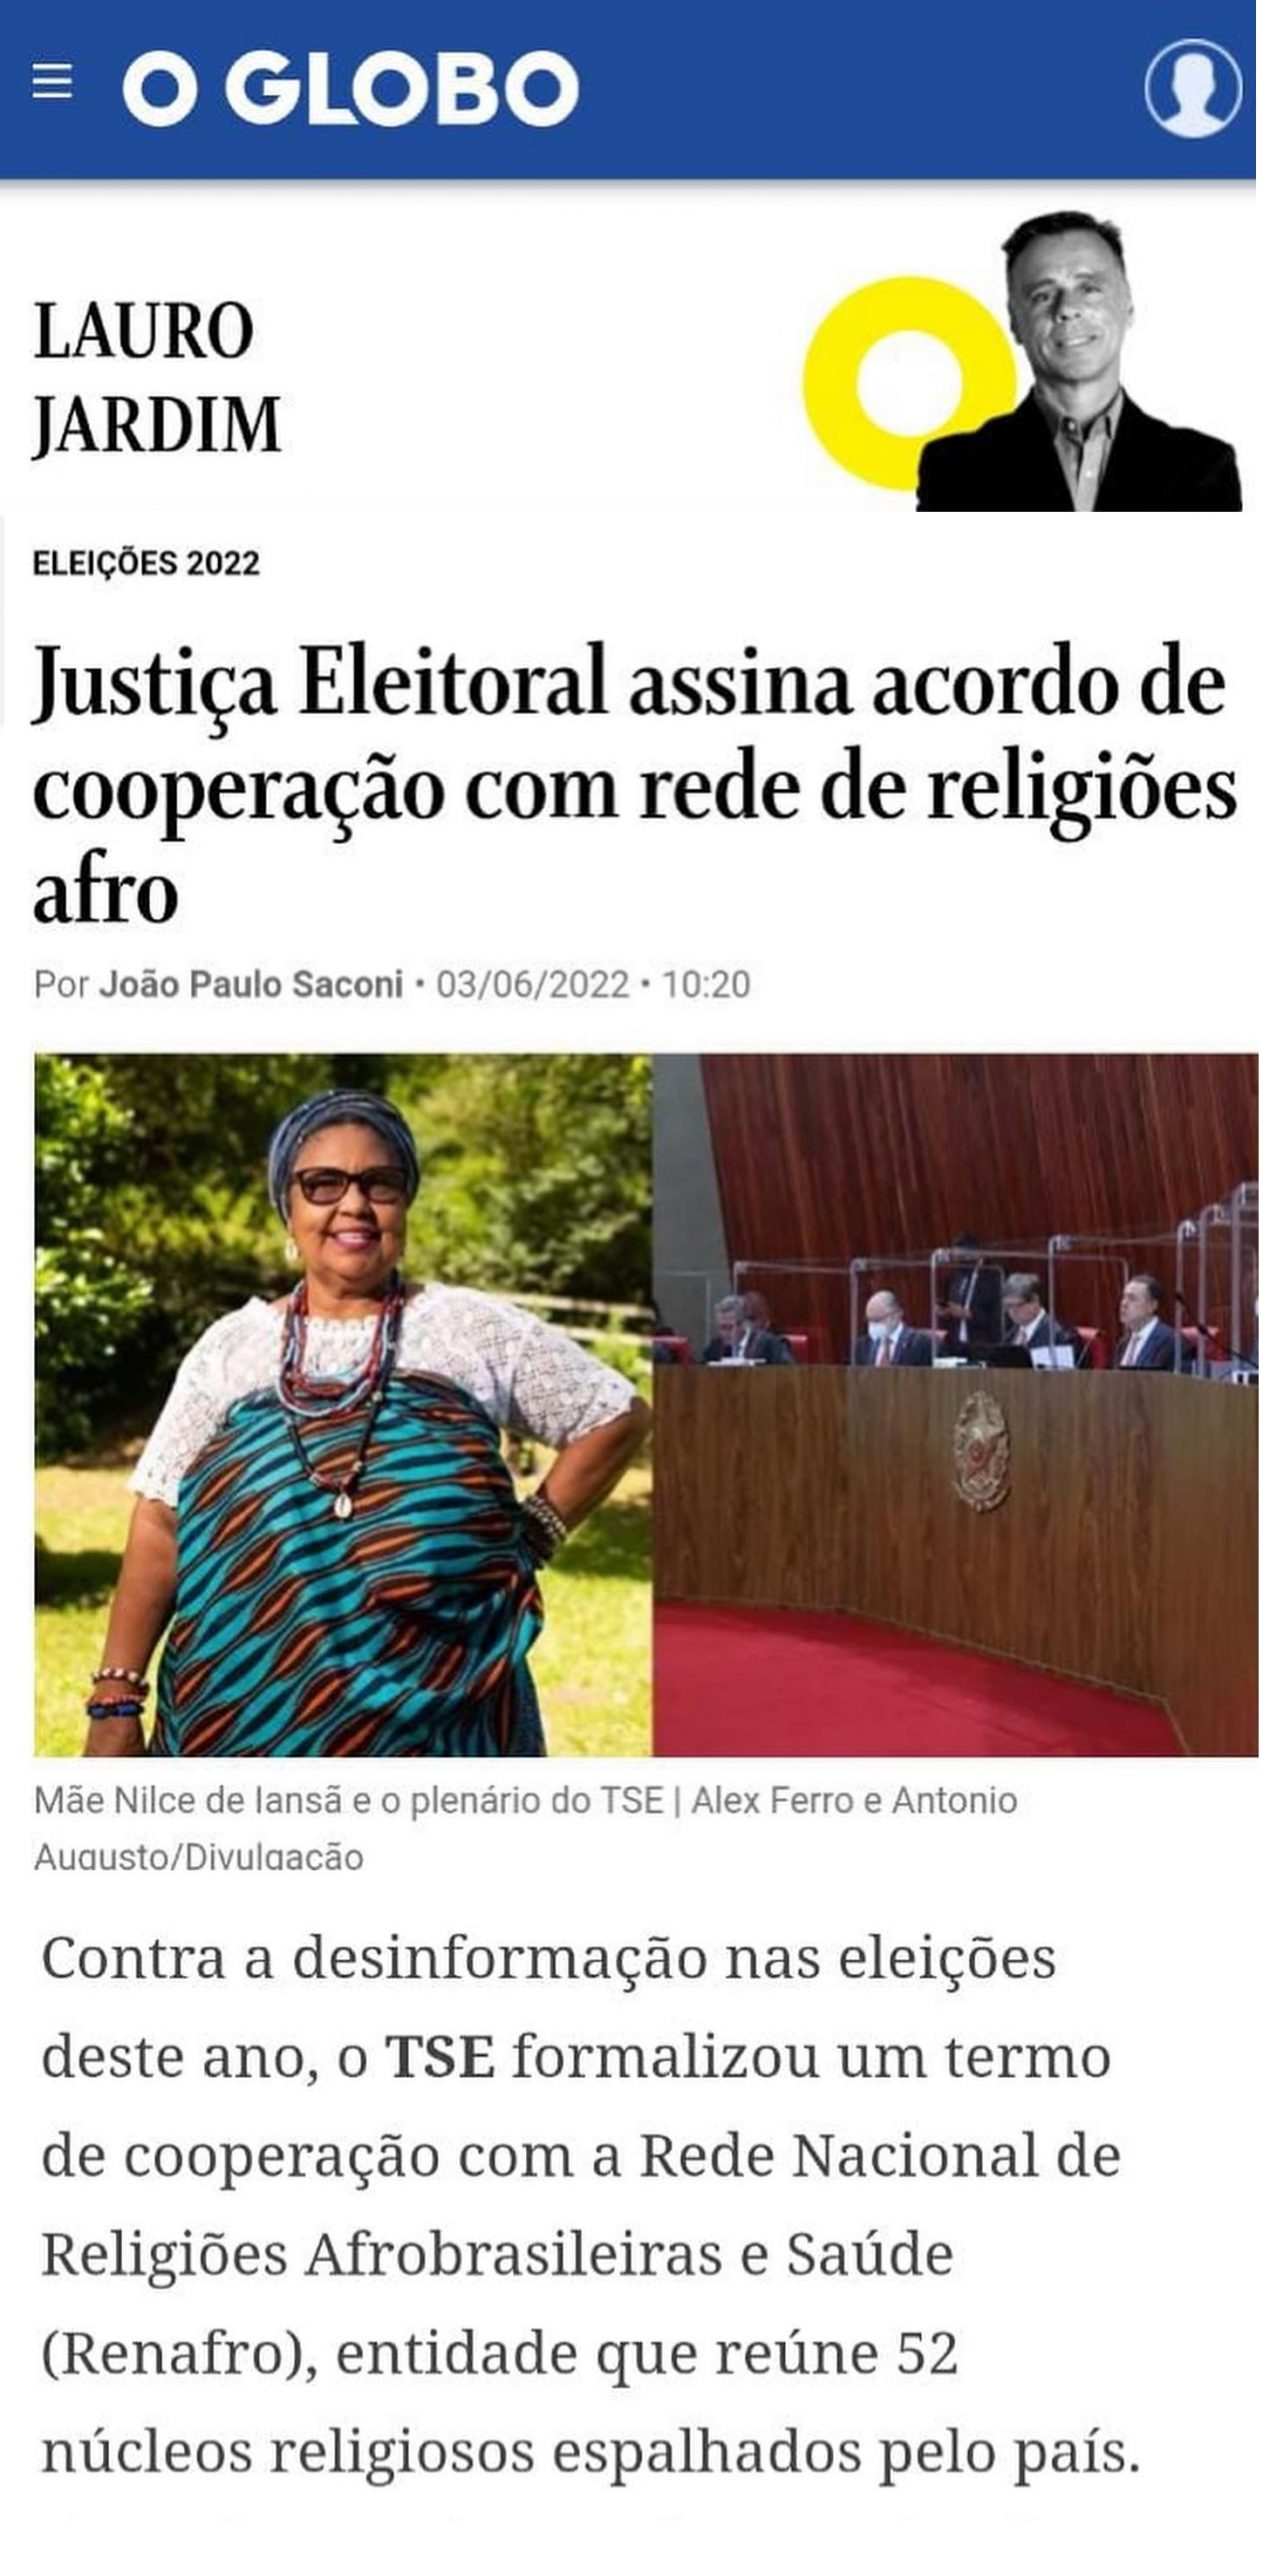 O Globo – LauroJardim – Julho de 2022